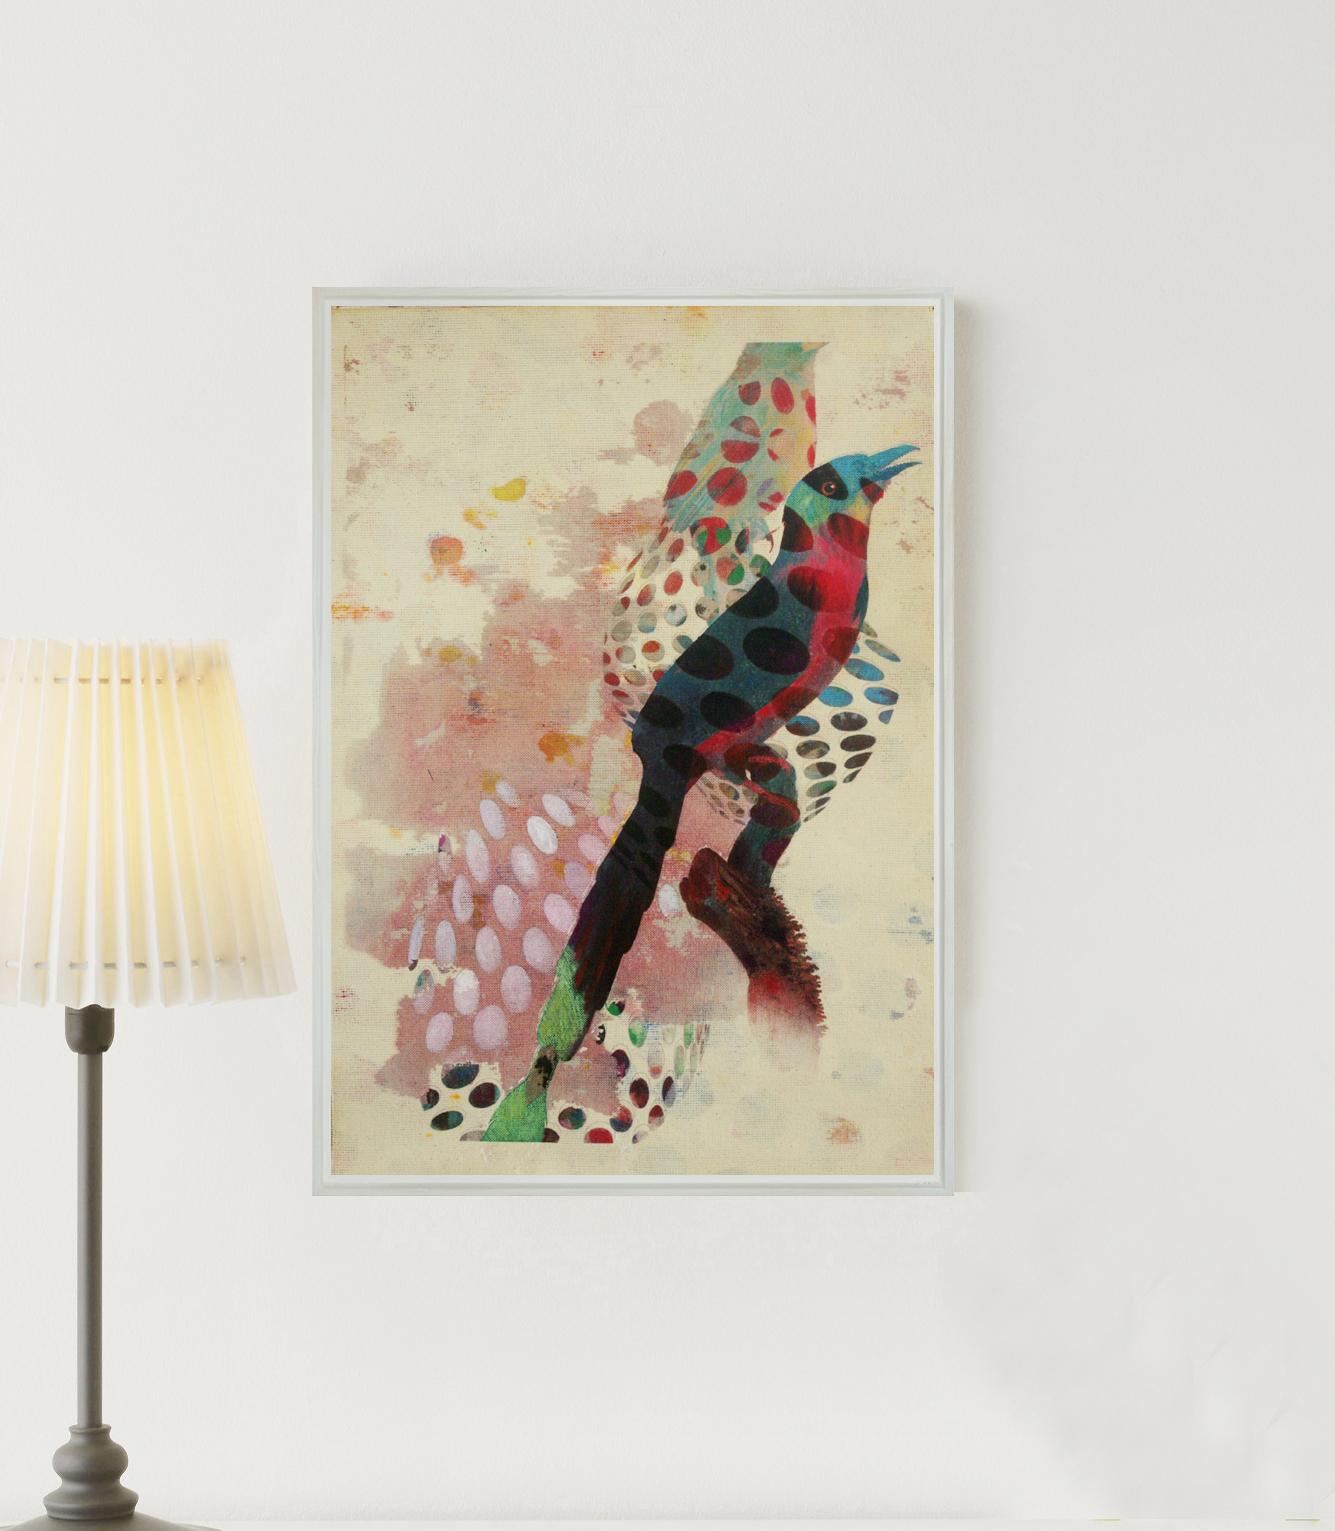 Oiseaux contemporains 018- Contemporain, abstrait, expressionniste, moderne, art de la rue, surréaliste - Painting de Francisco Nicolás